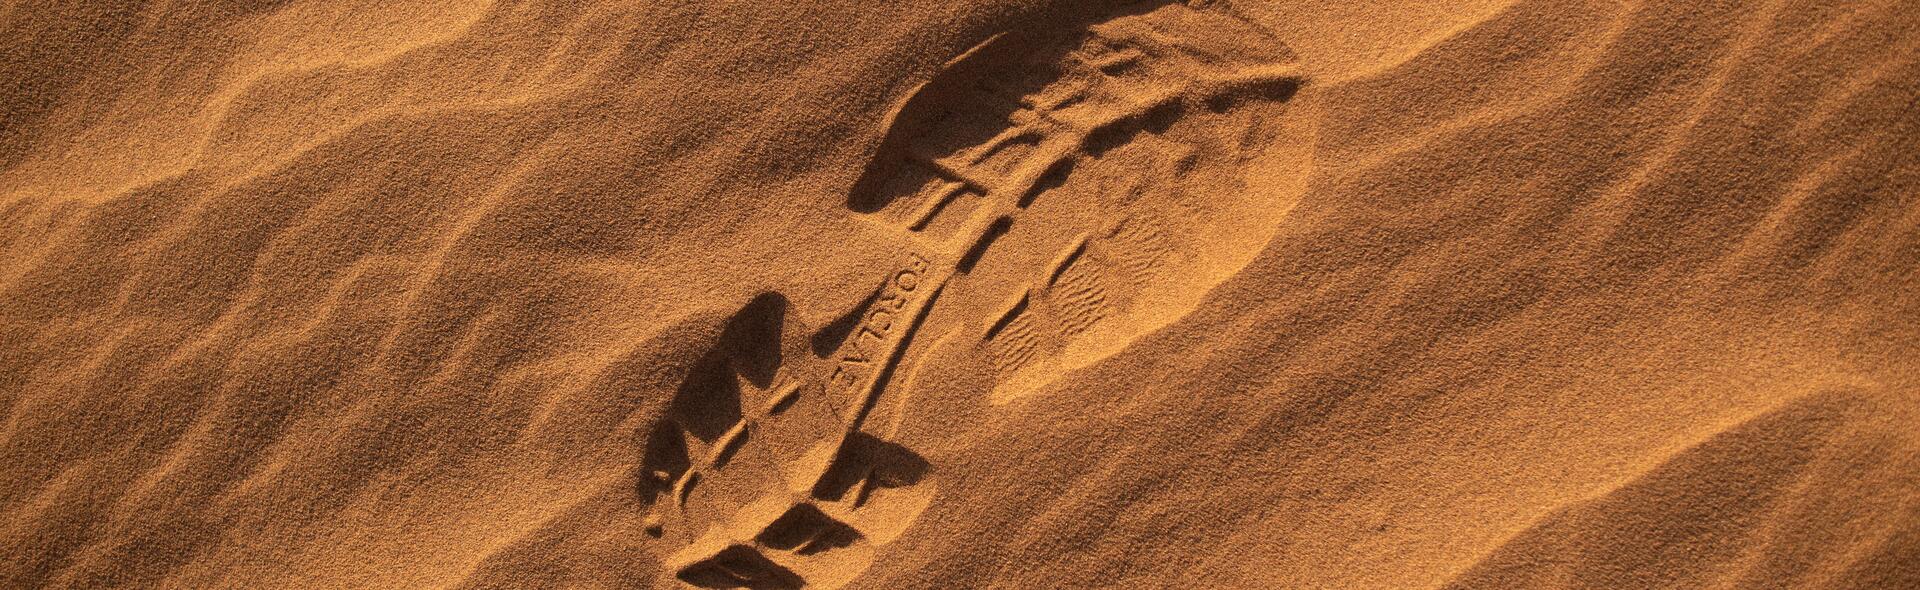 Footprint - desert trek